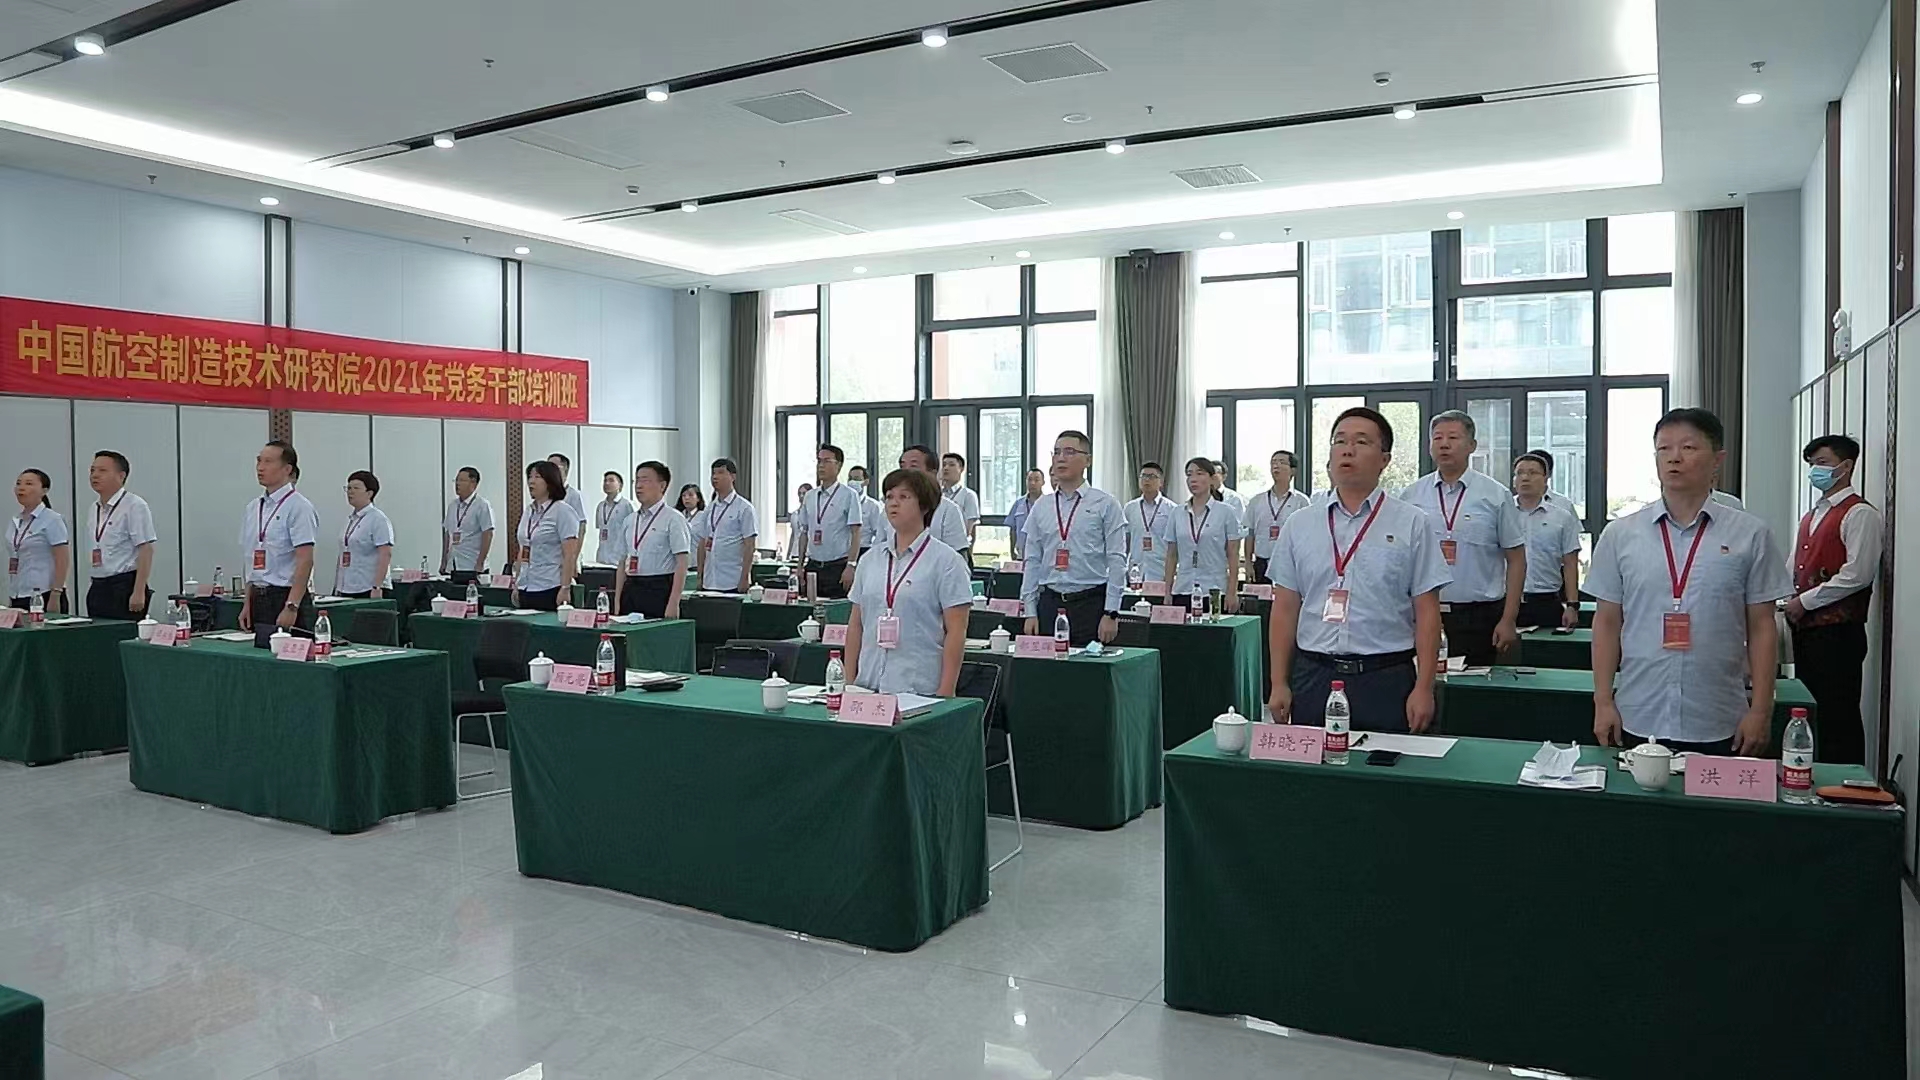 中国航空制造研究中心301中心党支部沂蒙红色教育培训班